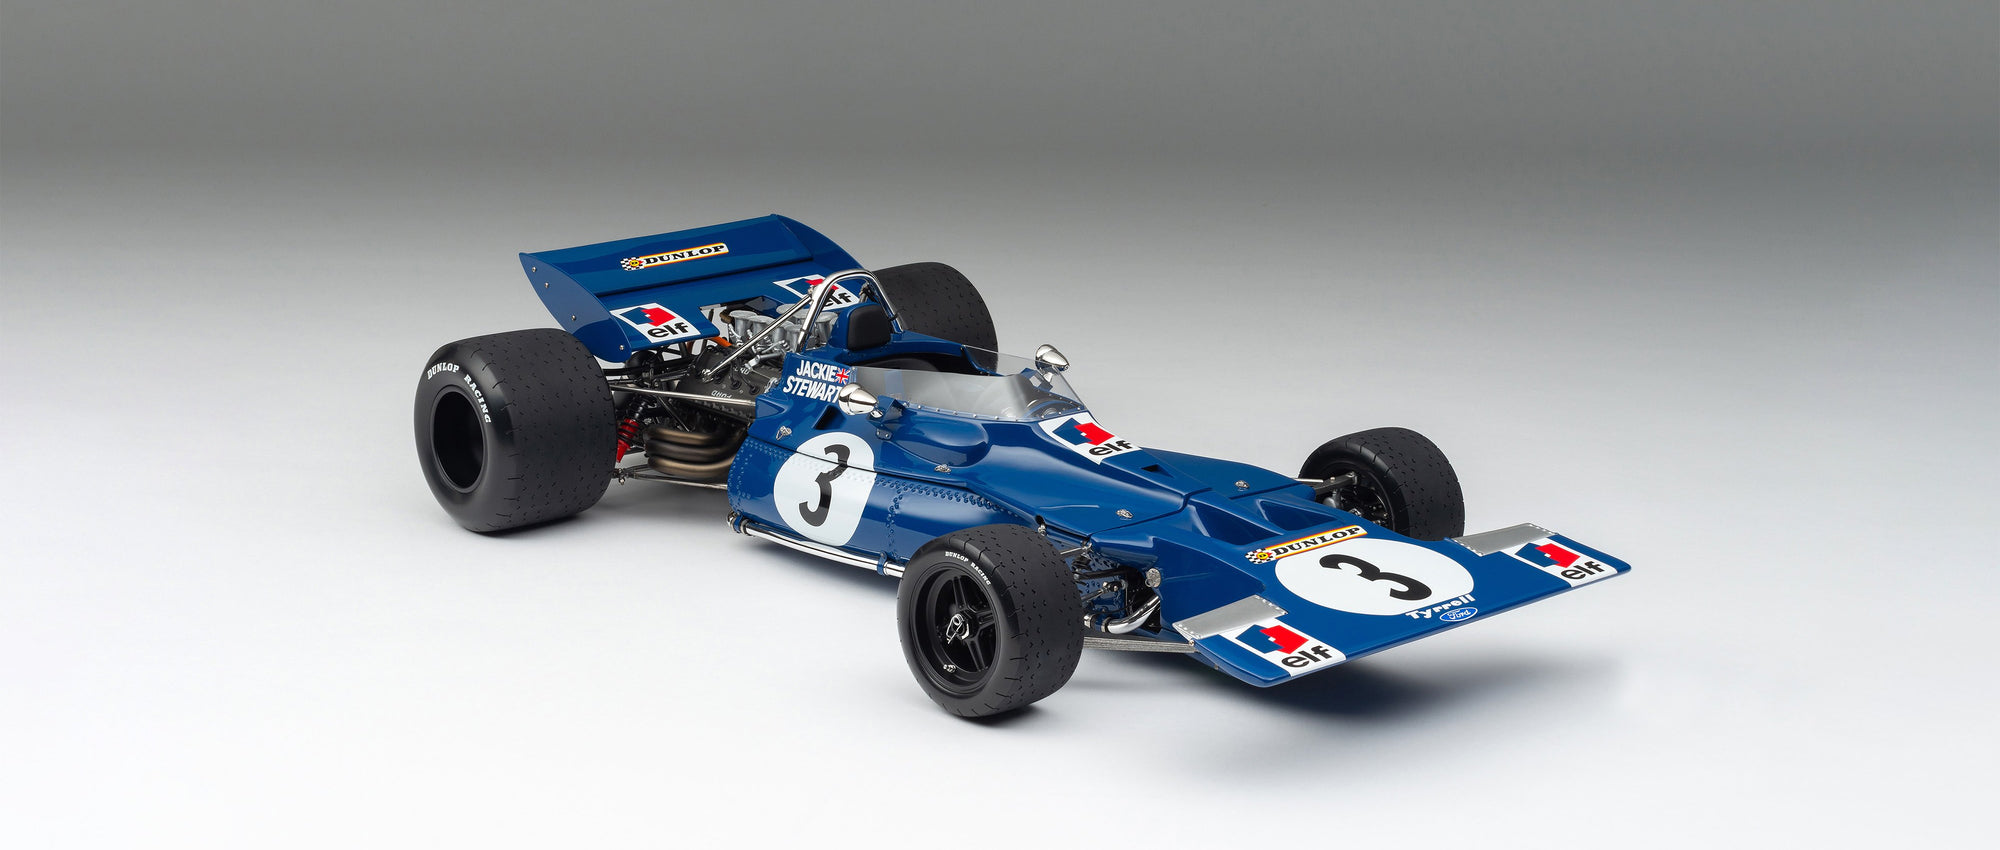 Elf Team Tyrrell 001 - Großer Preis von Kanada 1970